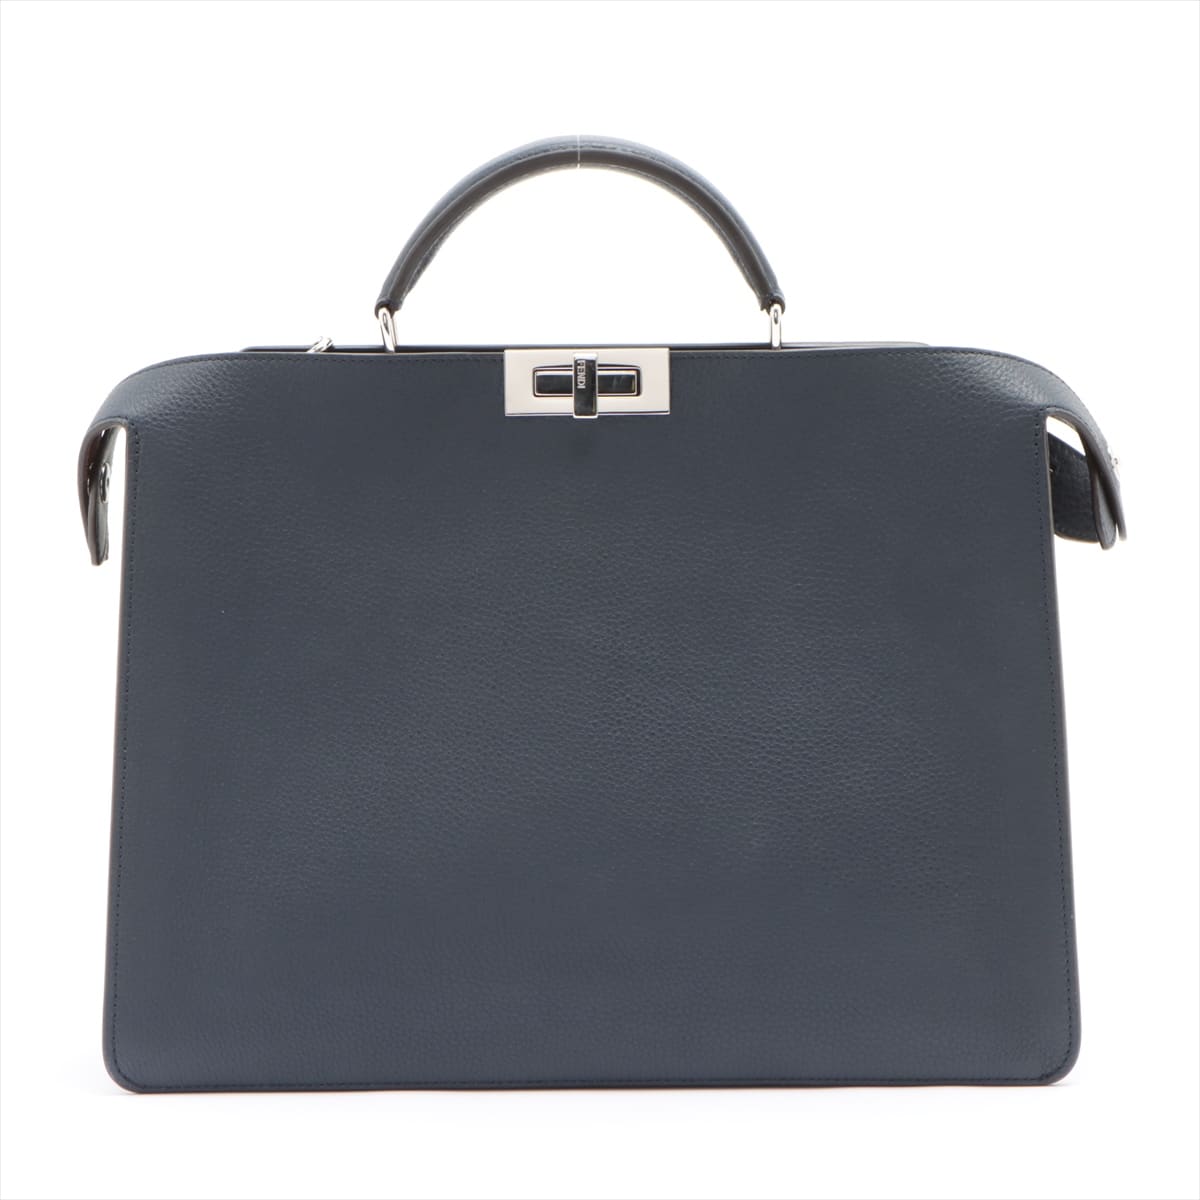 Fendi Peek-a-boo Essential Leather 2way handbag Navy blue